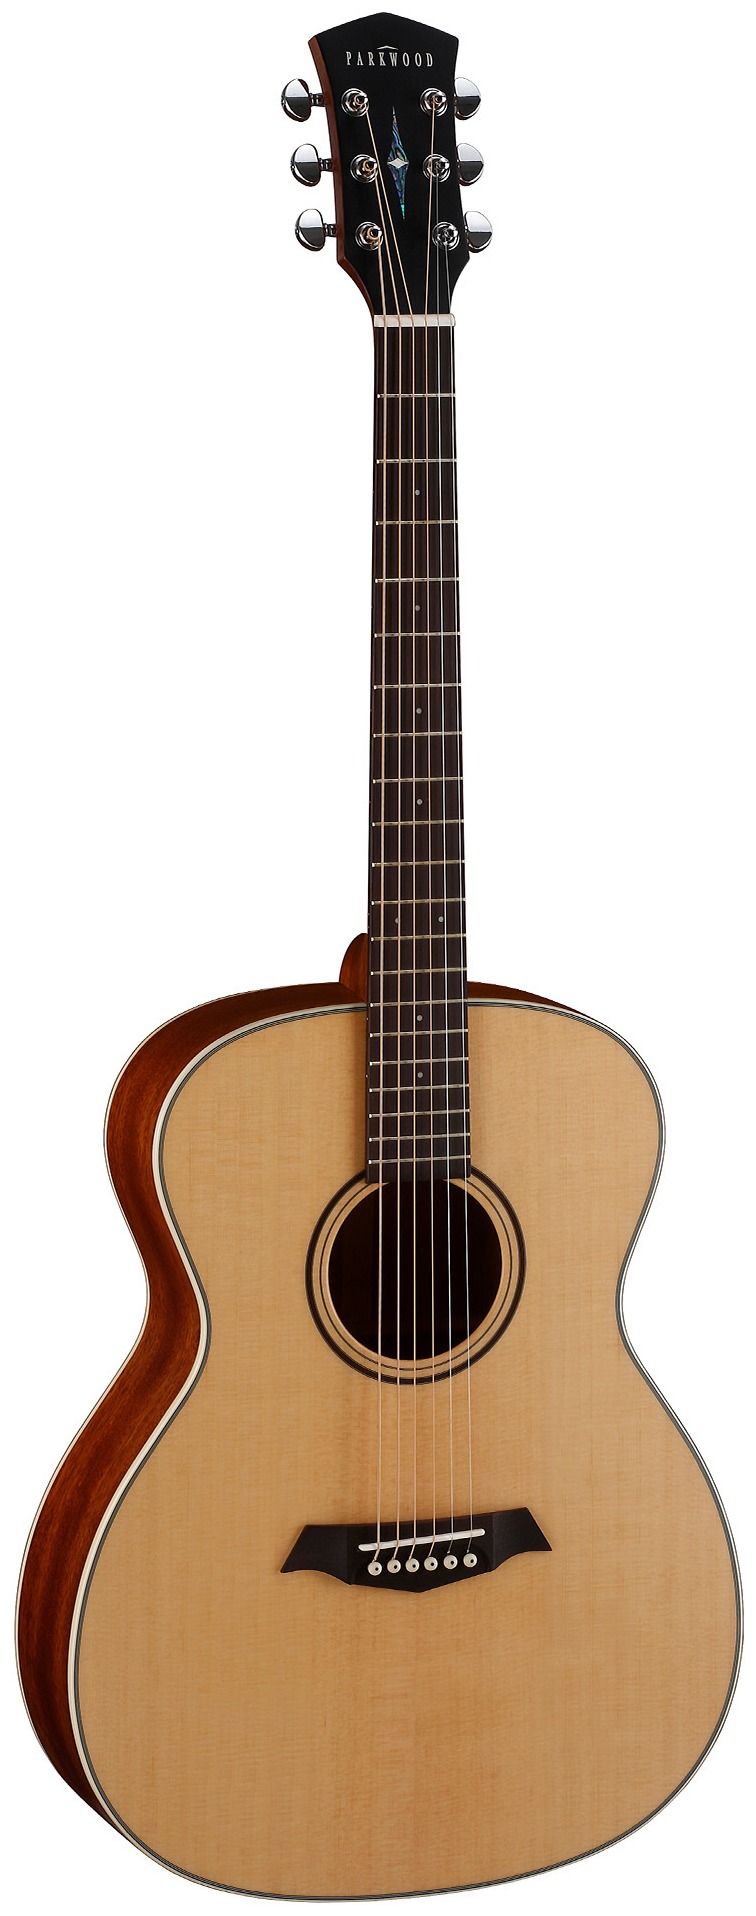 Акустические гитары Parkwood S22-GT (чехол в комплекте) электроакустические гитары parkwood pf51e wbag op чехол в комплекте